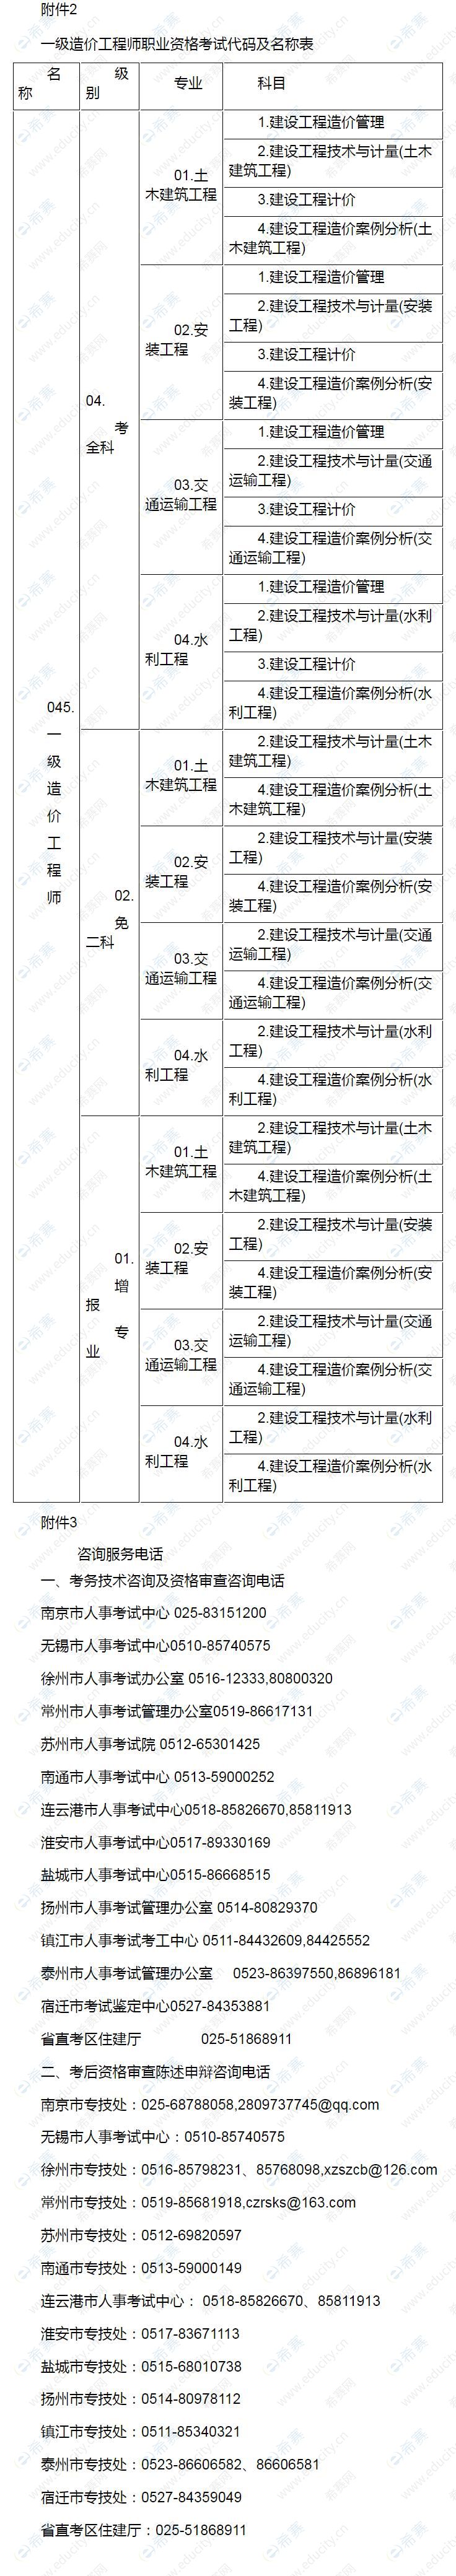 2021江苏一造考试代码及名称表+咨询电话.jpg